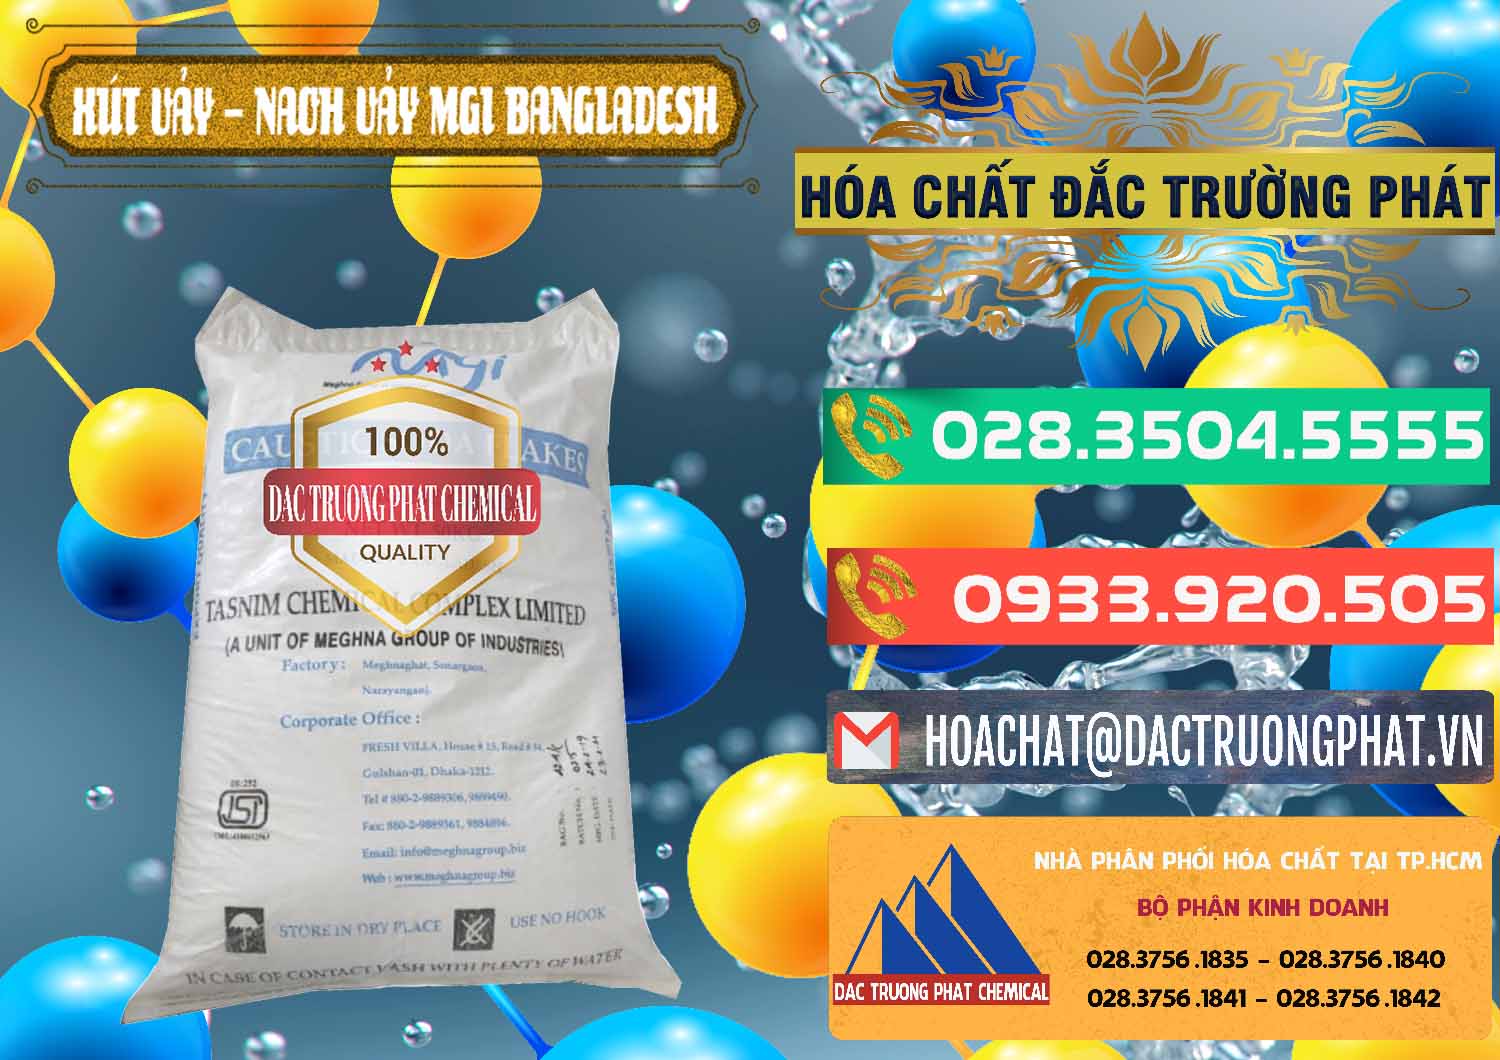 Công ty chuyên bán - cung ứng Xút Vảy - NaOH Vảy 99% MGI Bangladesh - 0274 - Nơi phân phối ( cung cấp ) hóa chất tại TP.HCM - congtyhoachat.com.vn